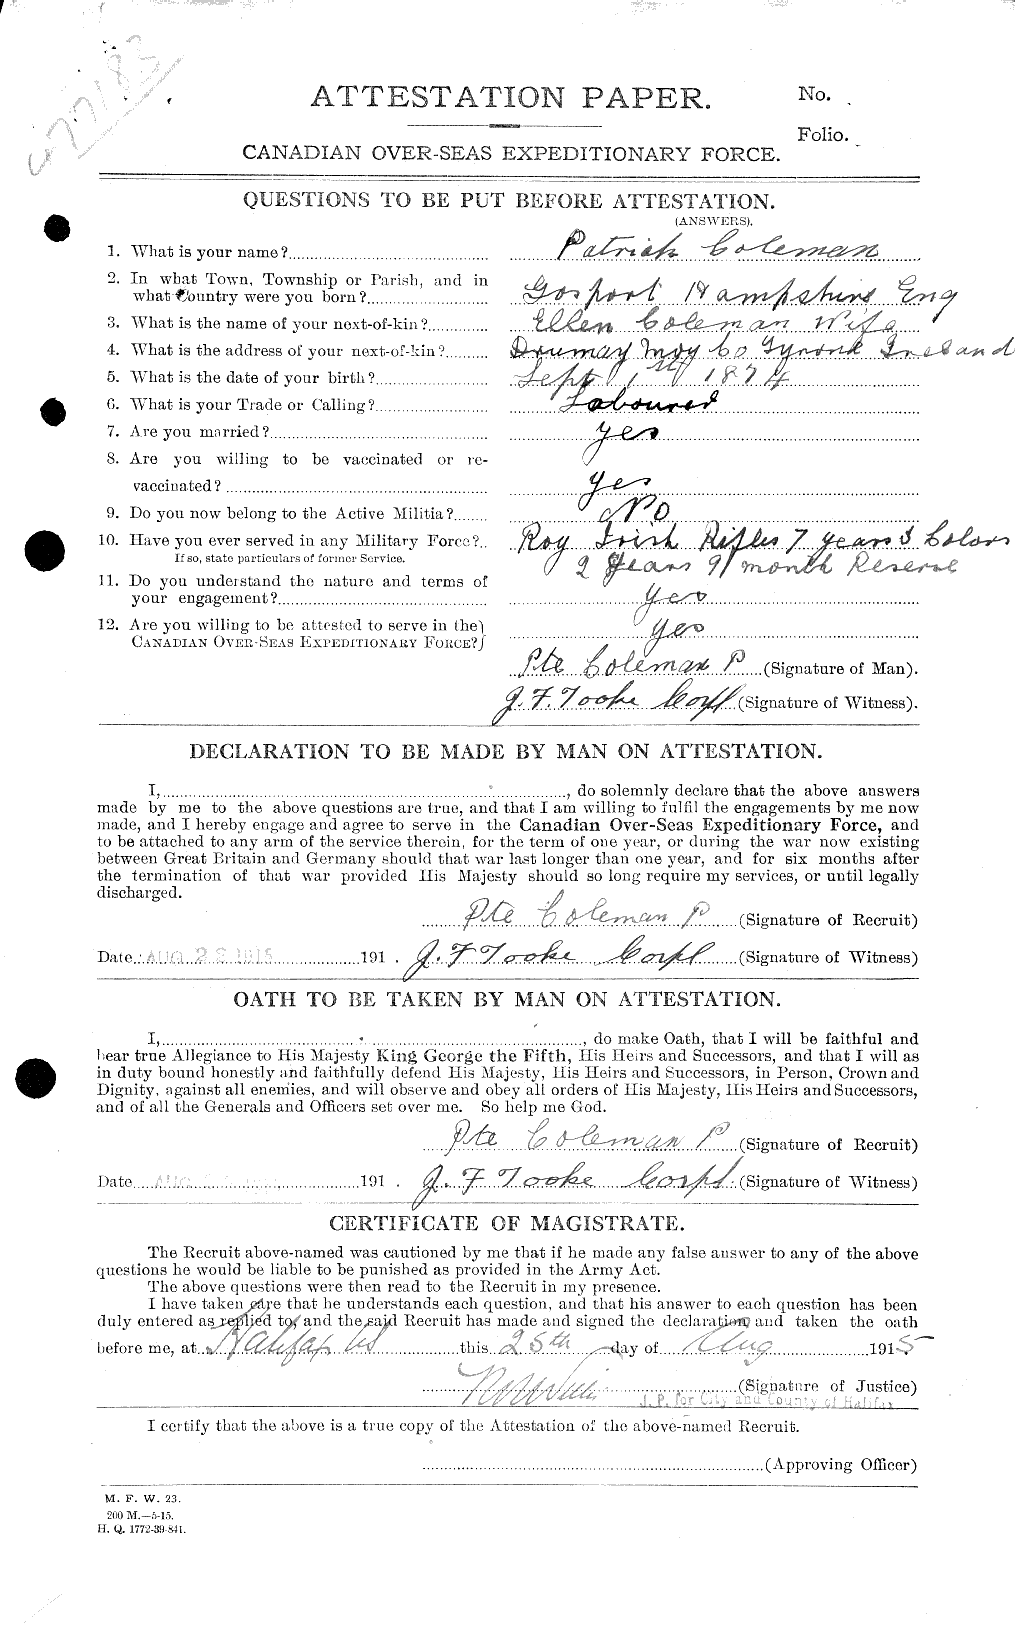 Dossiers du Personnel de la Première Guerre mondiale - CEC 028250a